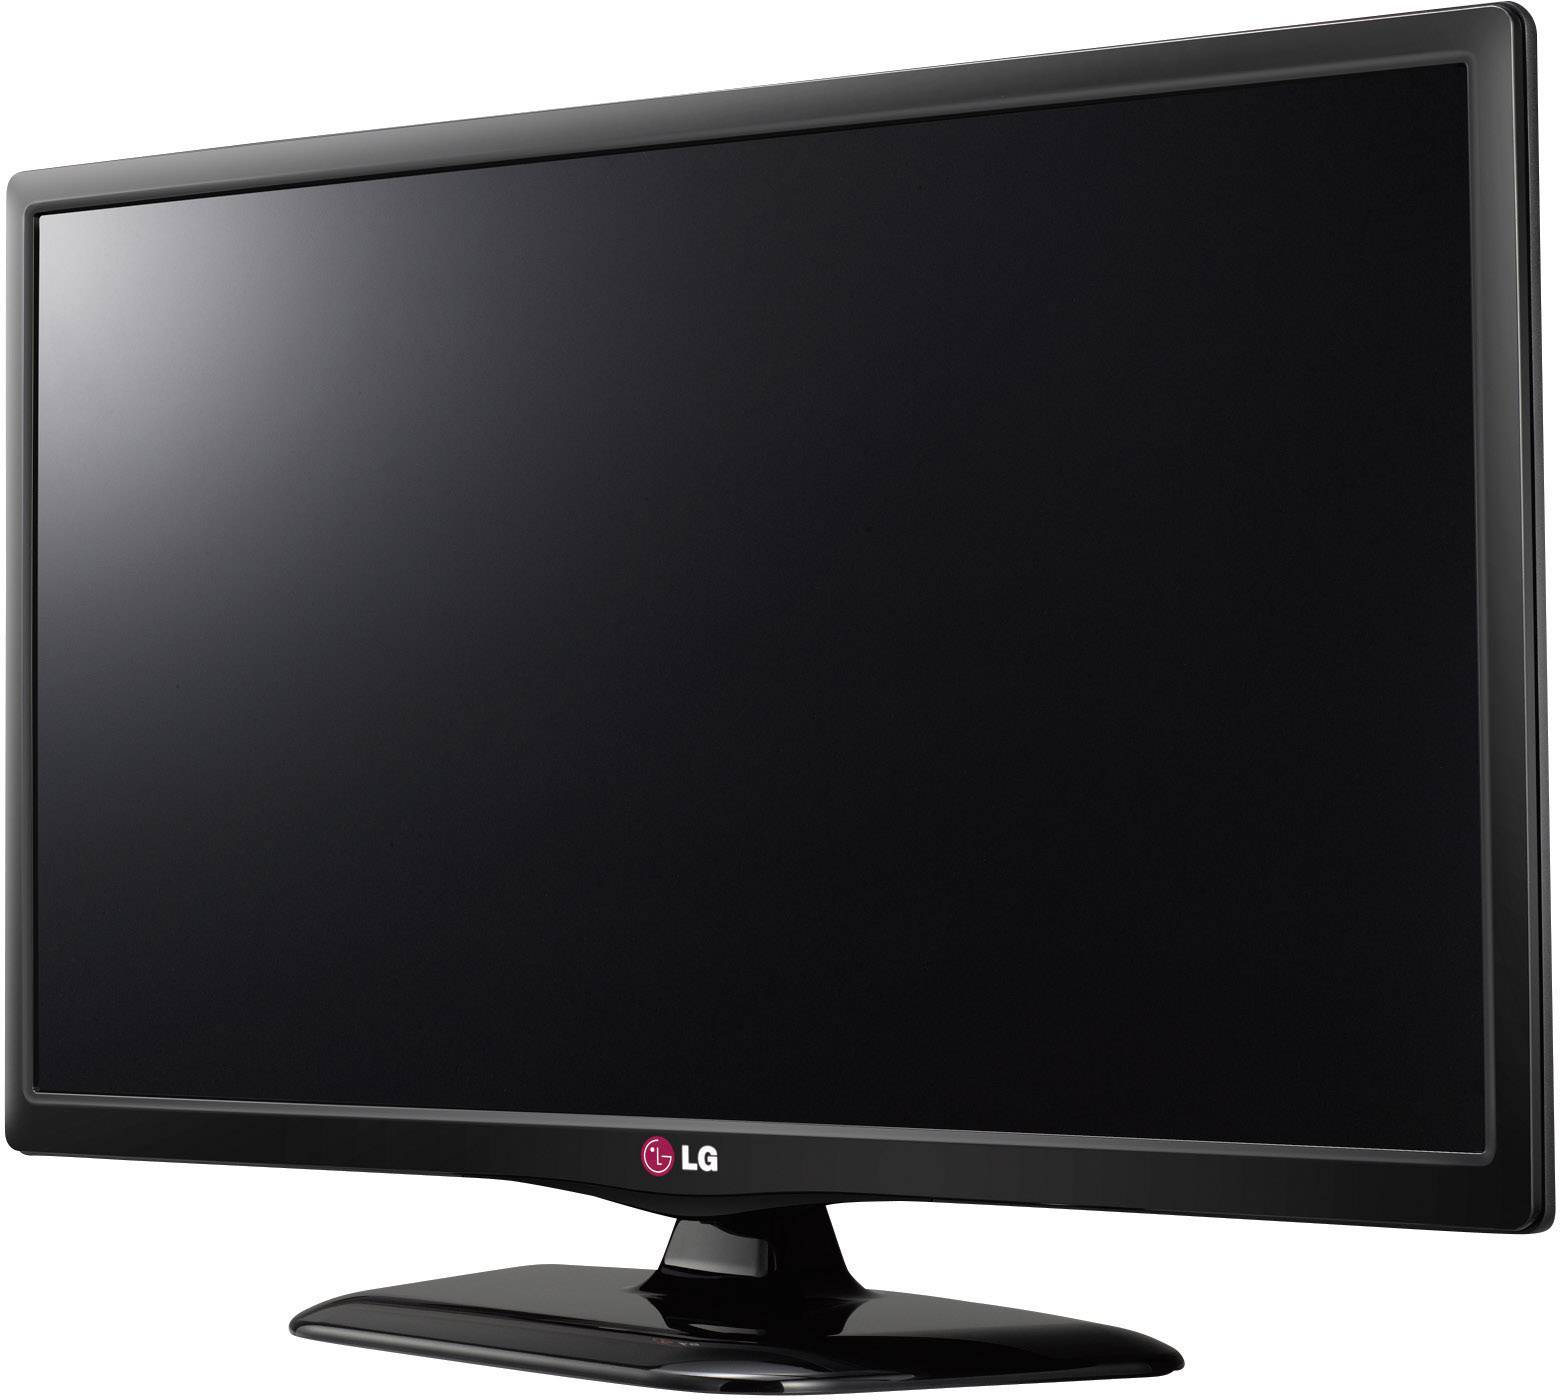 Качество телевизора lg. LG 28lb450u. Телевизор LG 28lb450u. Телевизор LG 28lb450u 28". Телевизор led 22 LG 22lf450u.